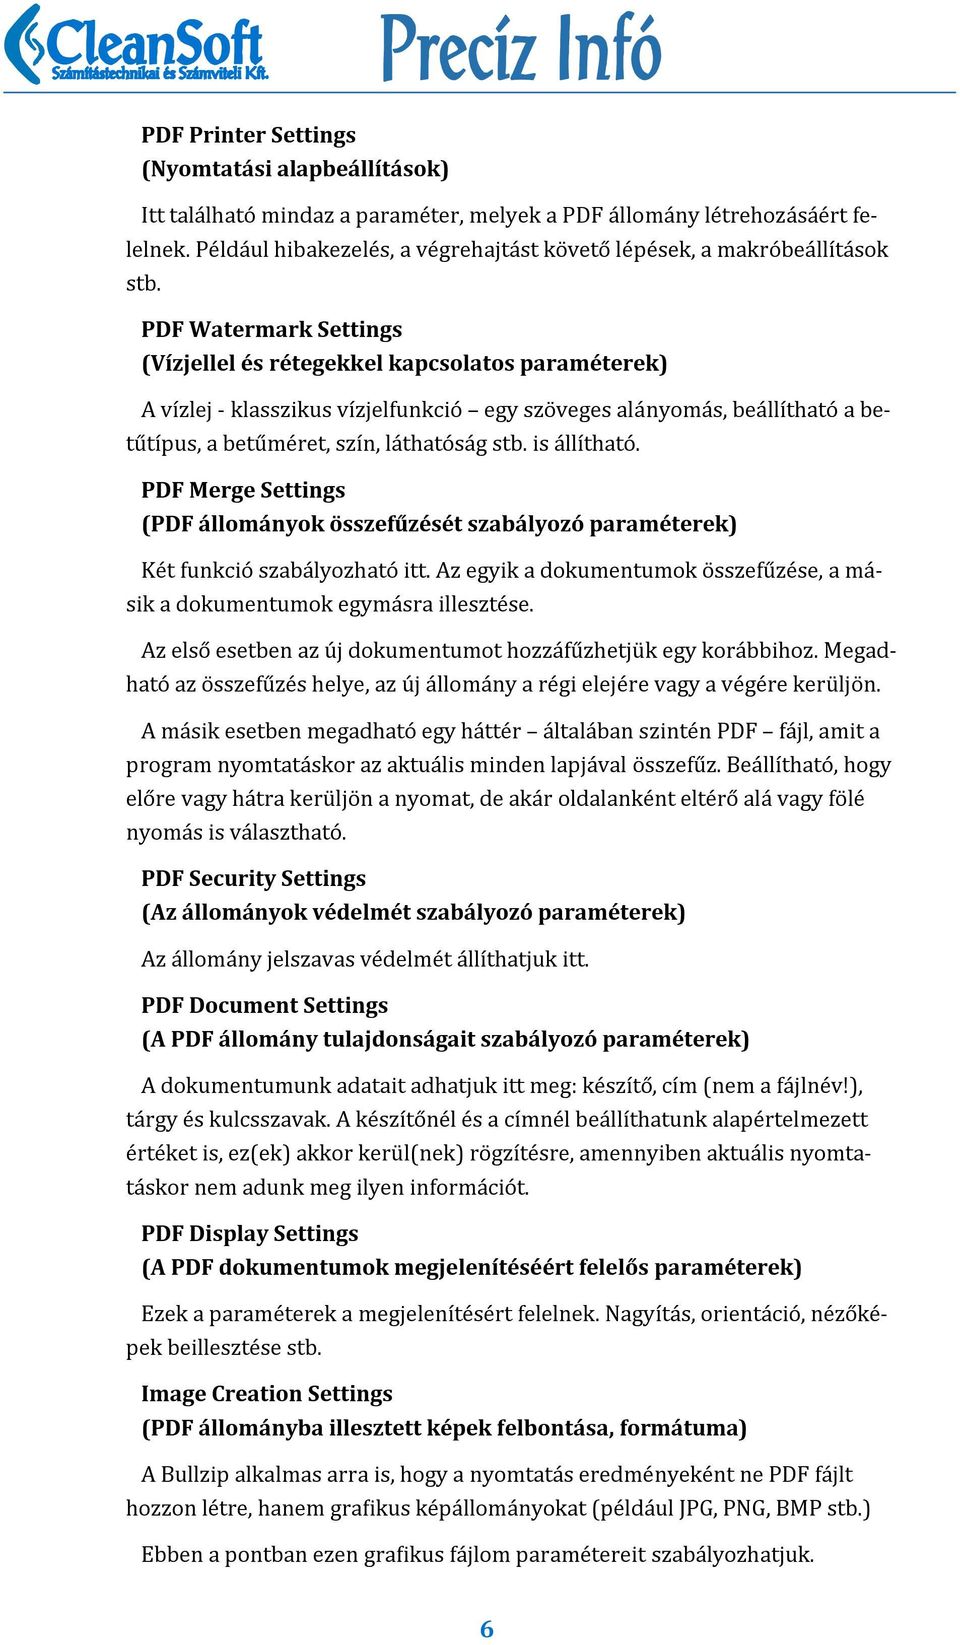 PDF Watermark Settings (Vízjellel és rétegekkel kapcsolatos paraméterek) A vıźlej - klasszikus vıźjelfunkcio egy szo veges ala nyoma s, bea llı thato a betu tıṕus, a betu me ret, szıń, la thato sa g